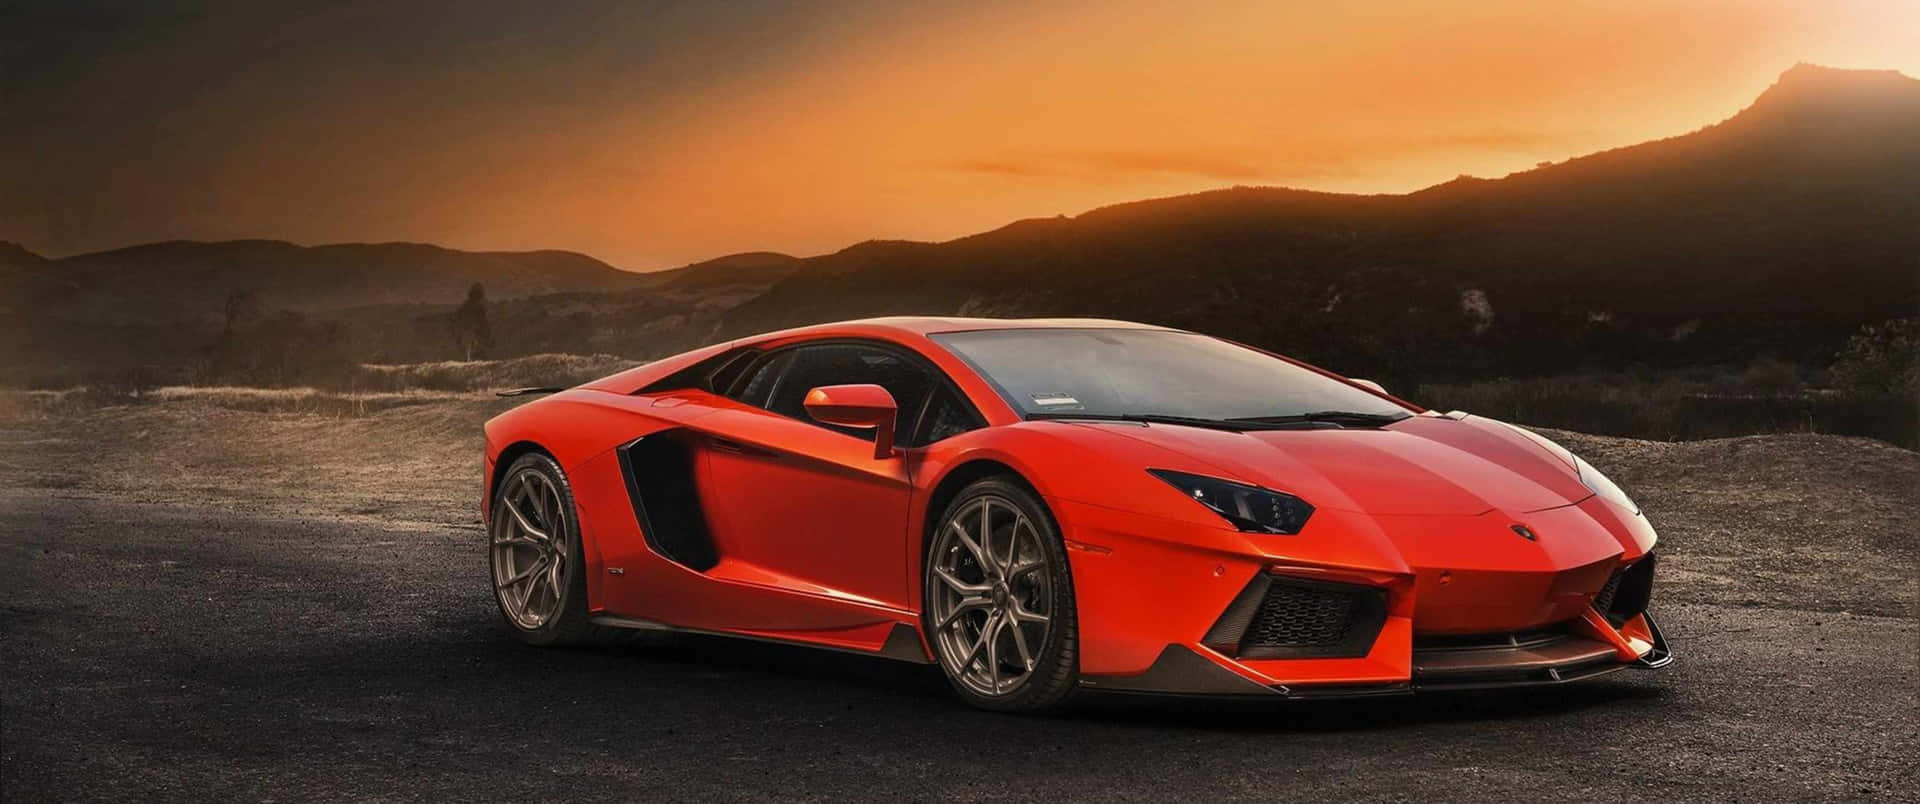 Sientela Velocidad: Lamborghini 3440x1440p.